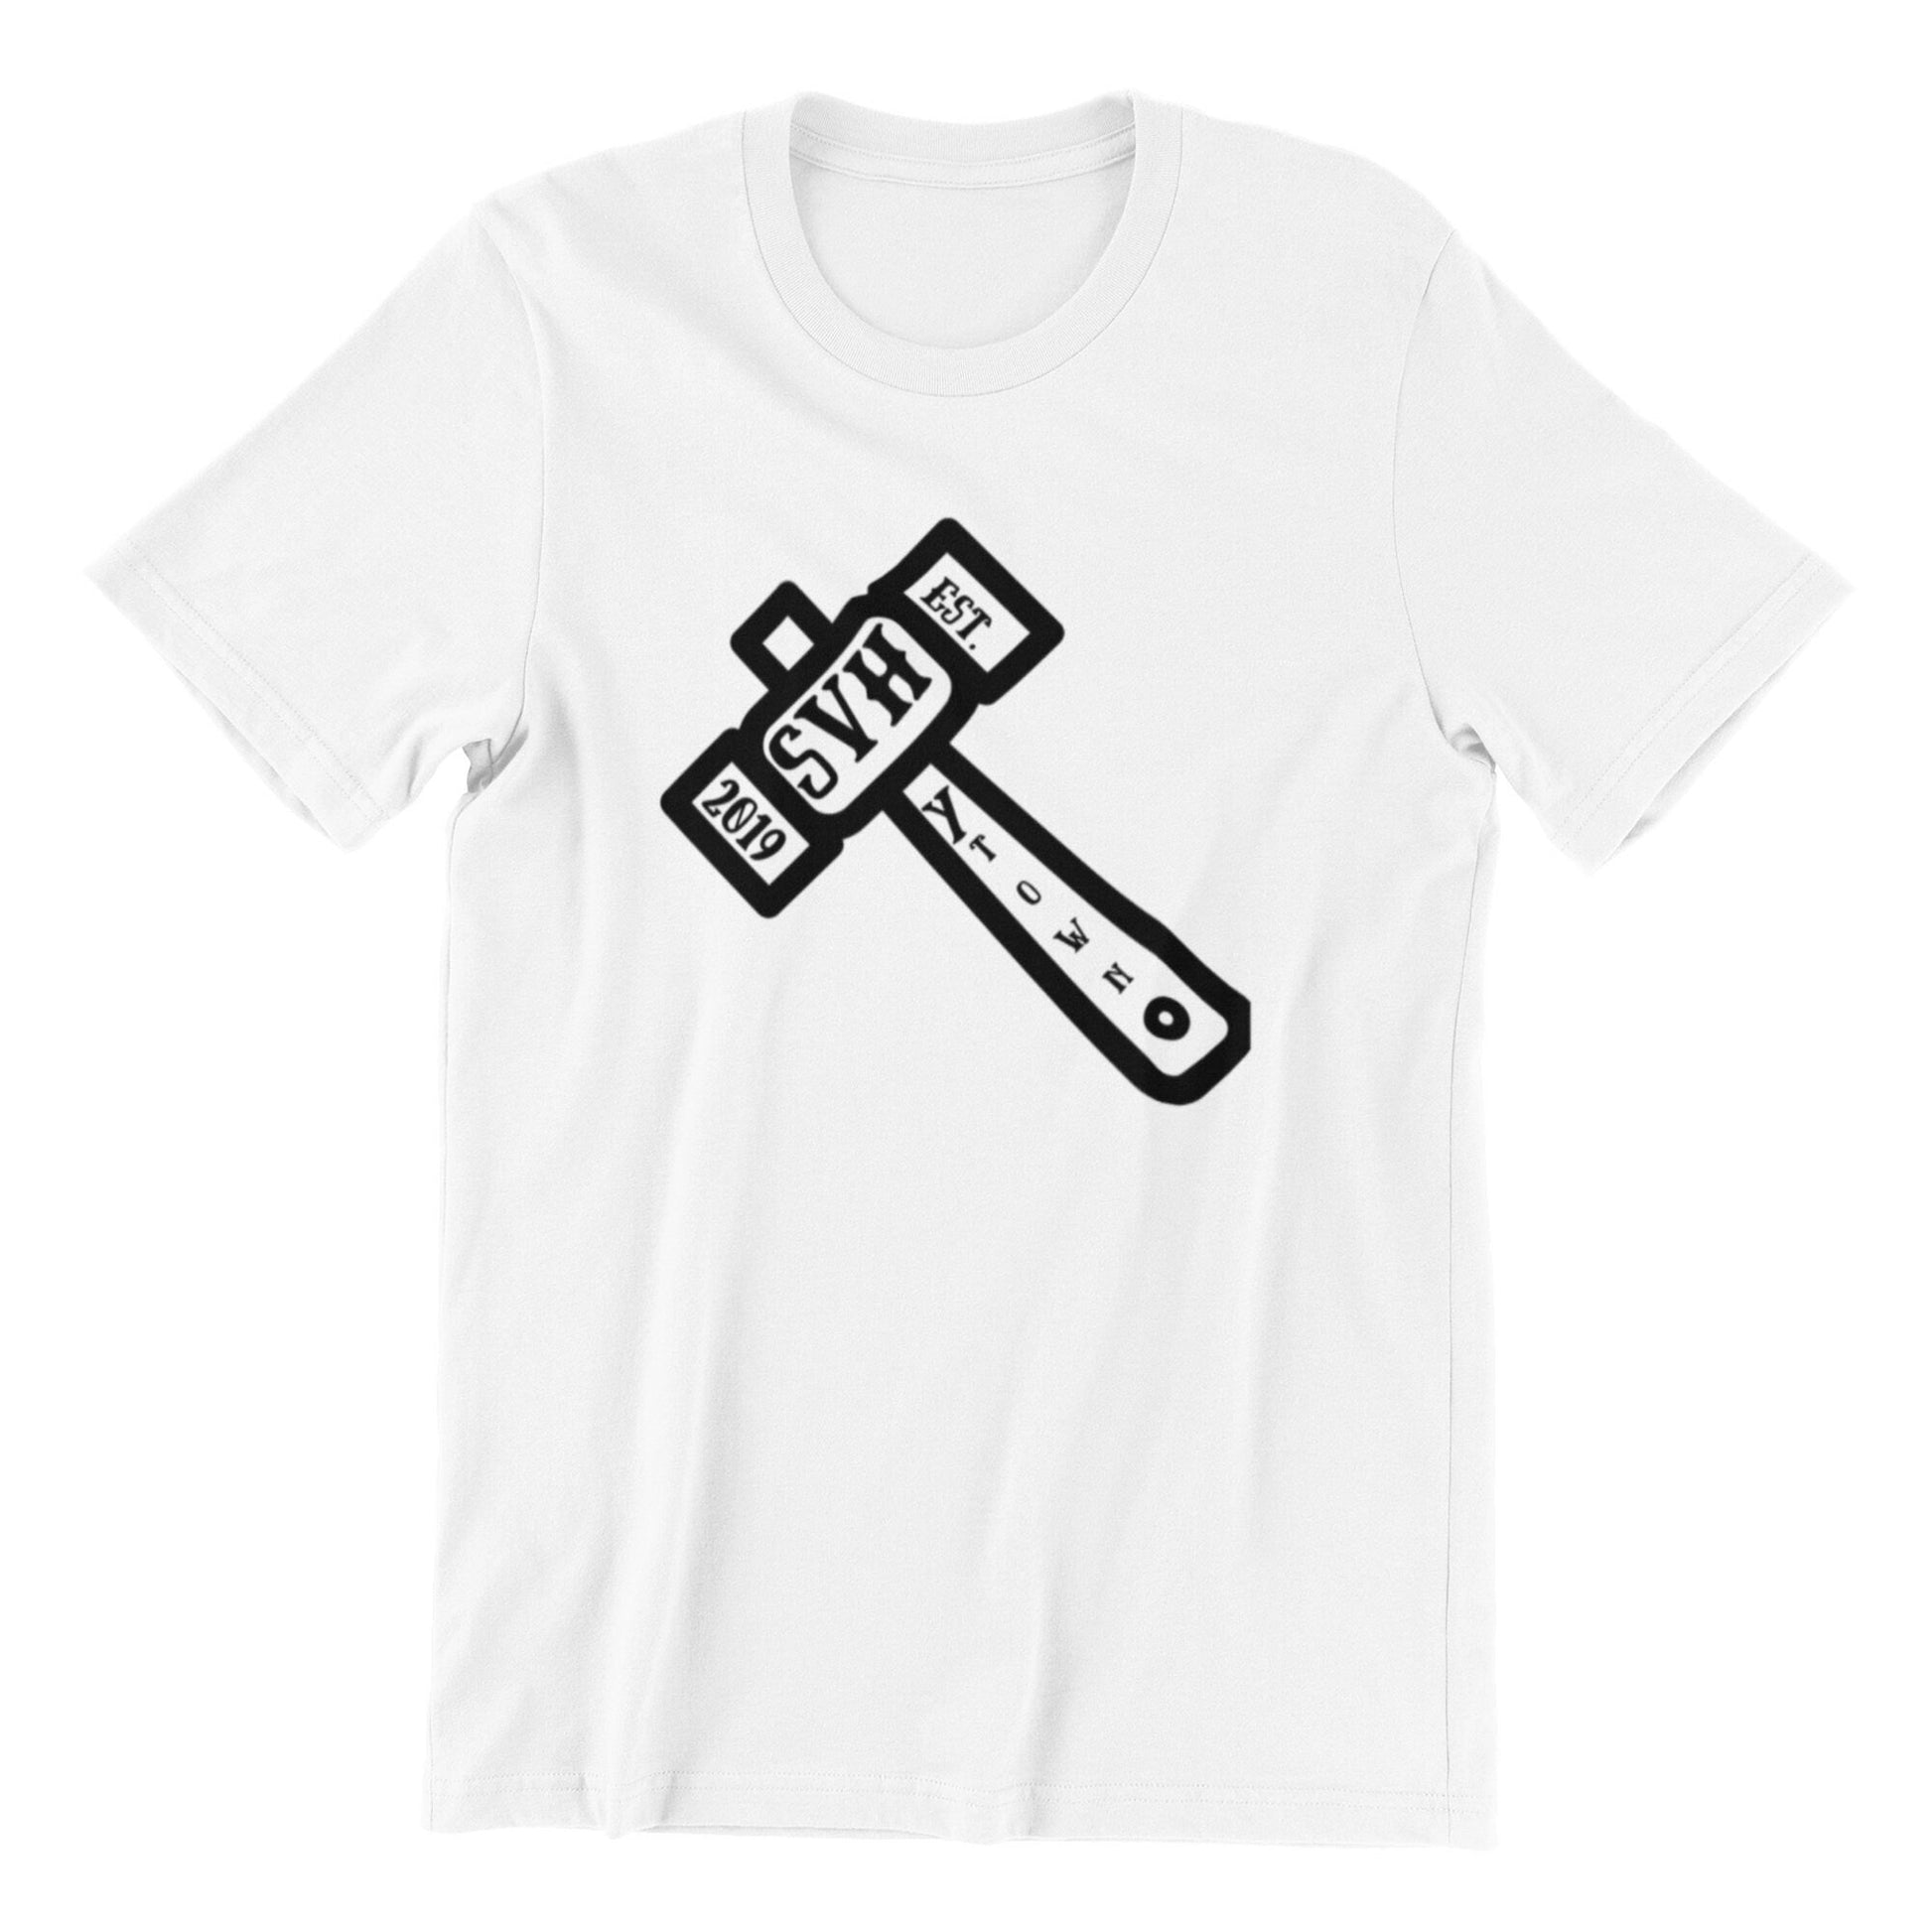 T-Shirt SVH Hammer Custom Shirt & Ink Color, Shirts and Tees, T-Shirt, Tees for Men